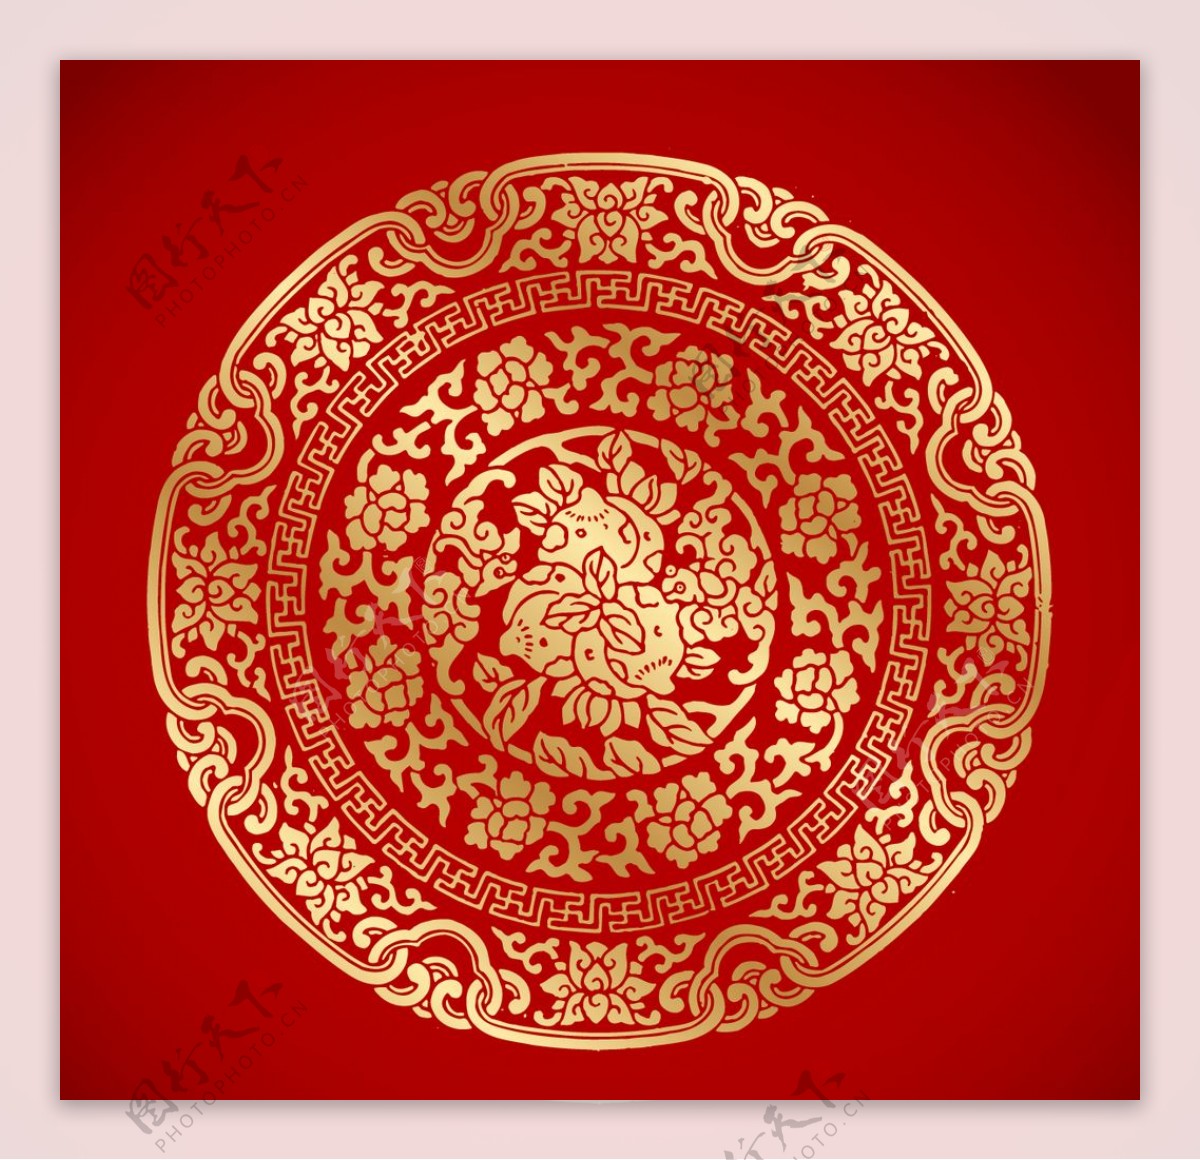 中式古典底纹